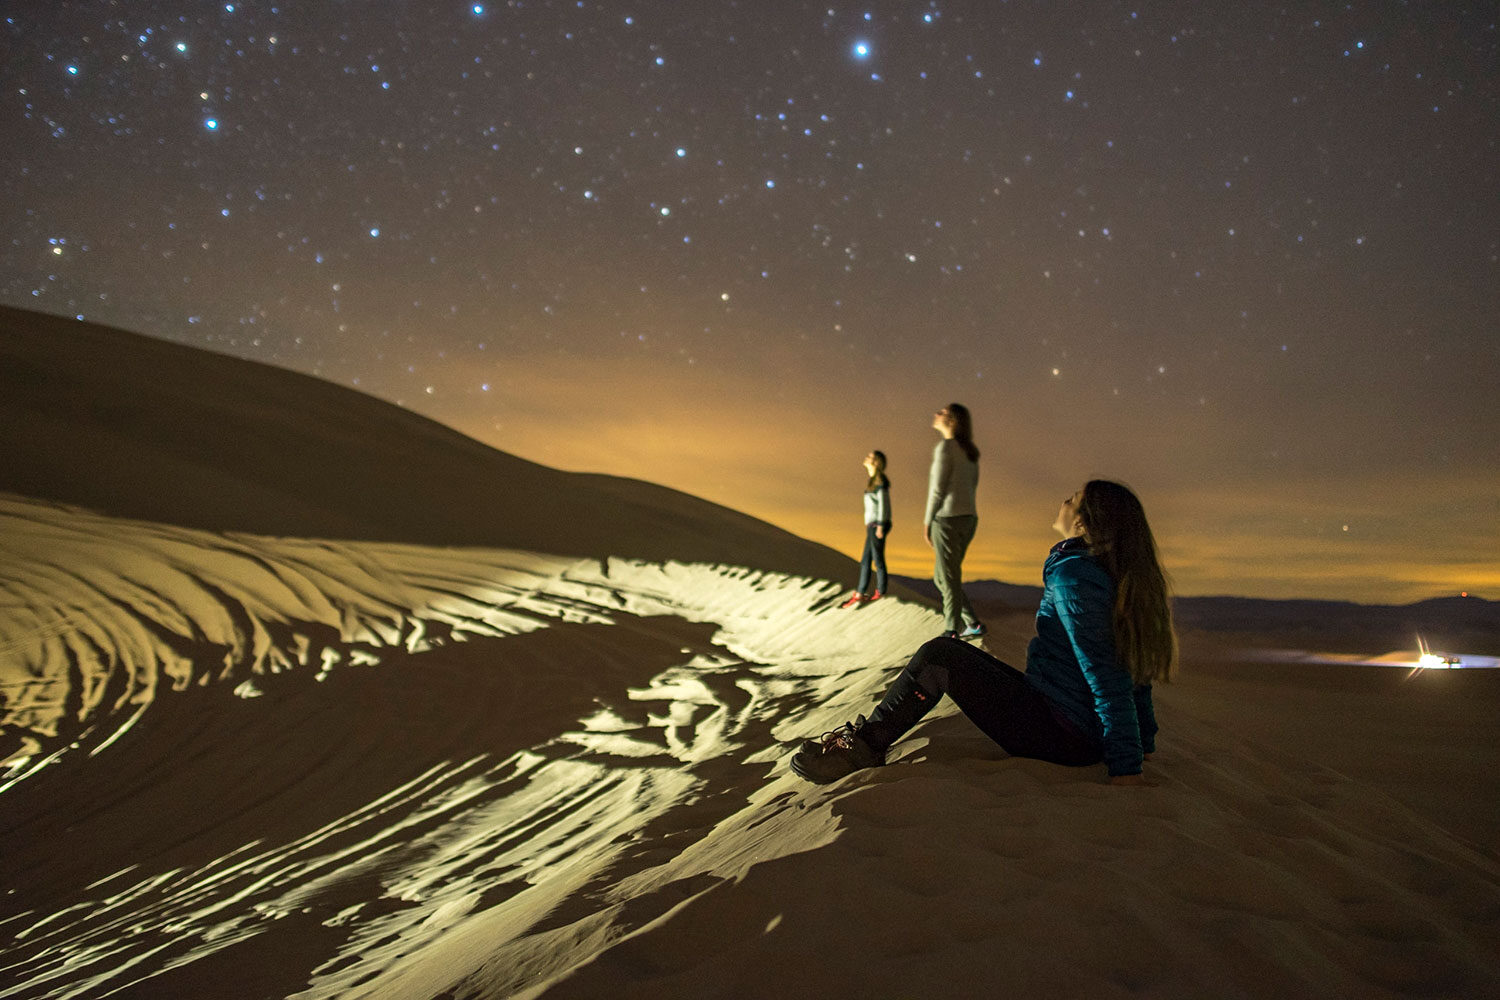 Three women gazing at the stars in wonder.